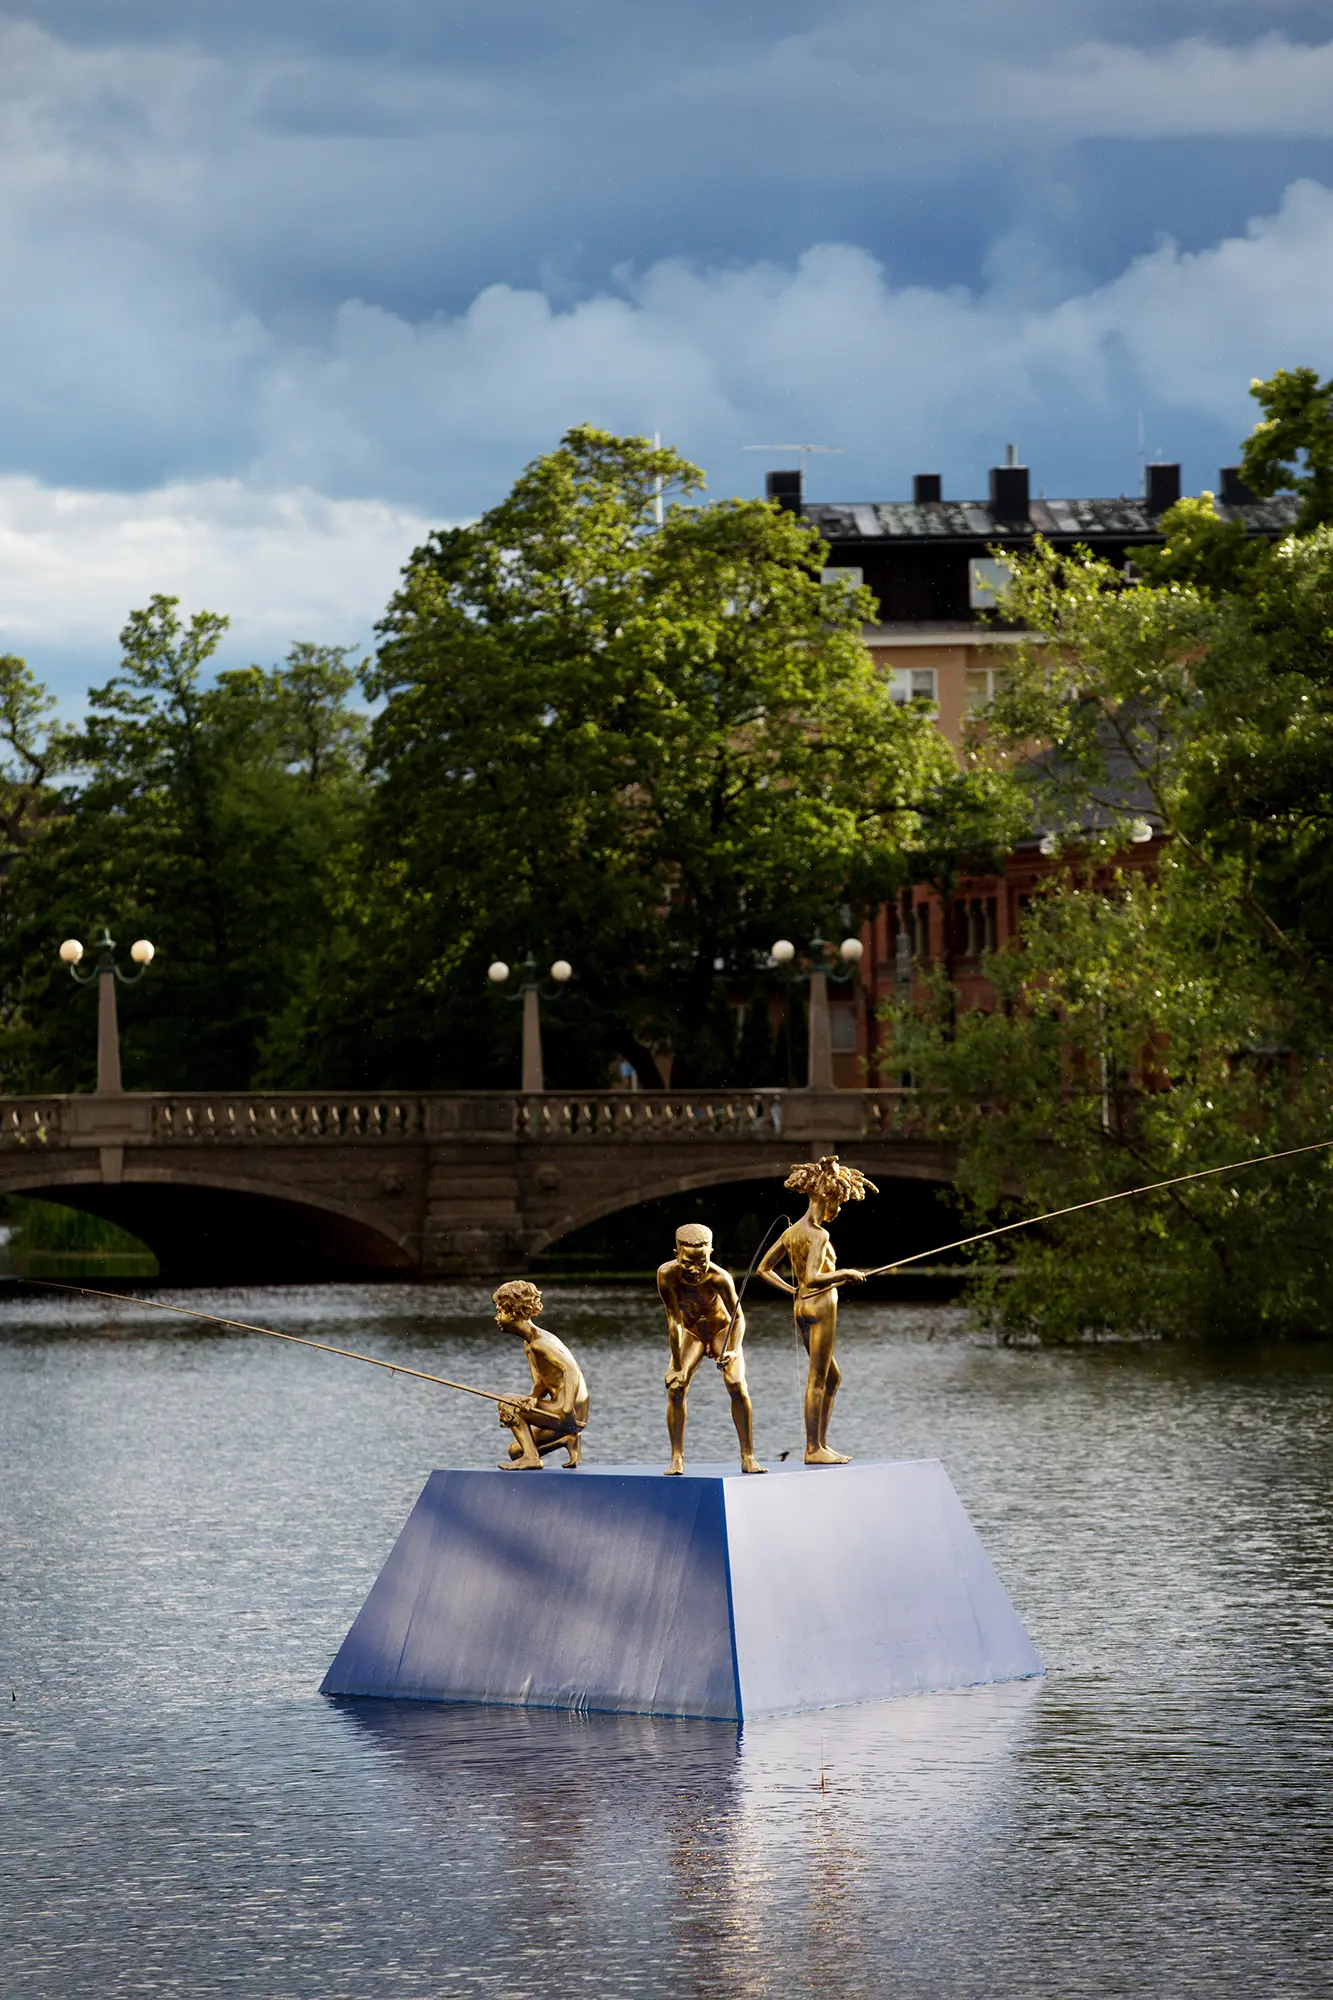 På en blå plattform ute i en å står tre guldfärgade statyer föreställande tre pojkar hållandes fiskespön. Två av pojkarna står framåtlutade och en står lätt bakåtlutad. I bakgrunden syns en bro och gröna träd.